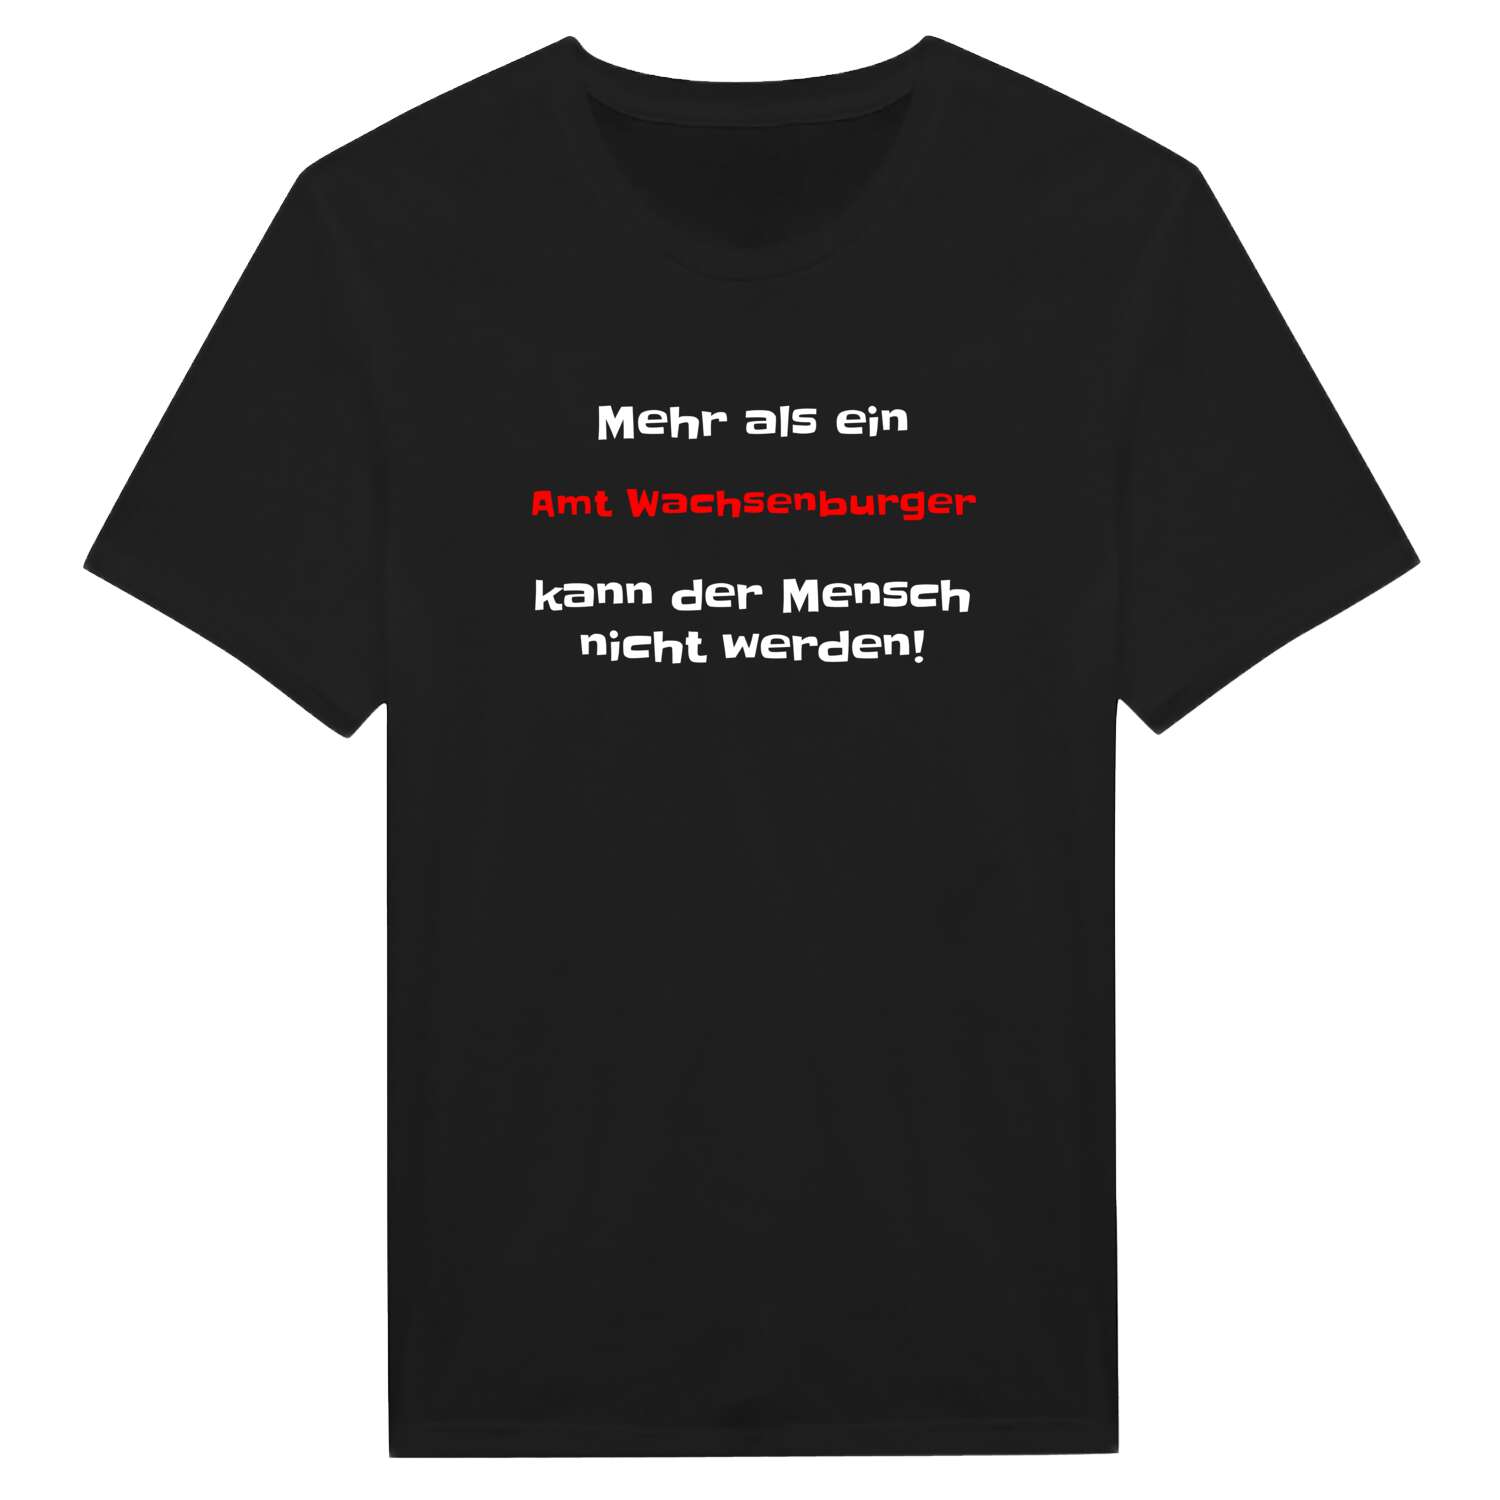 Amt Wachsenburg T-Shirt »Mehr als ein«